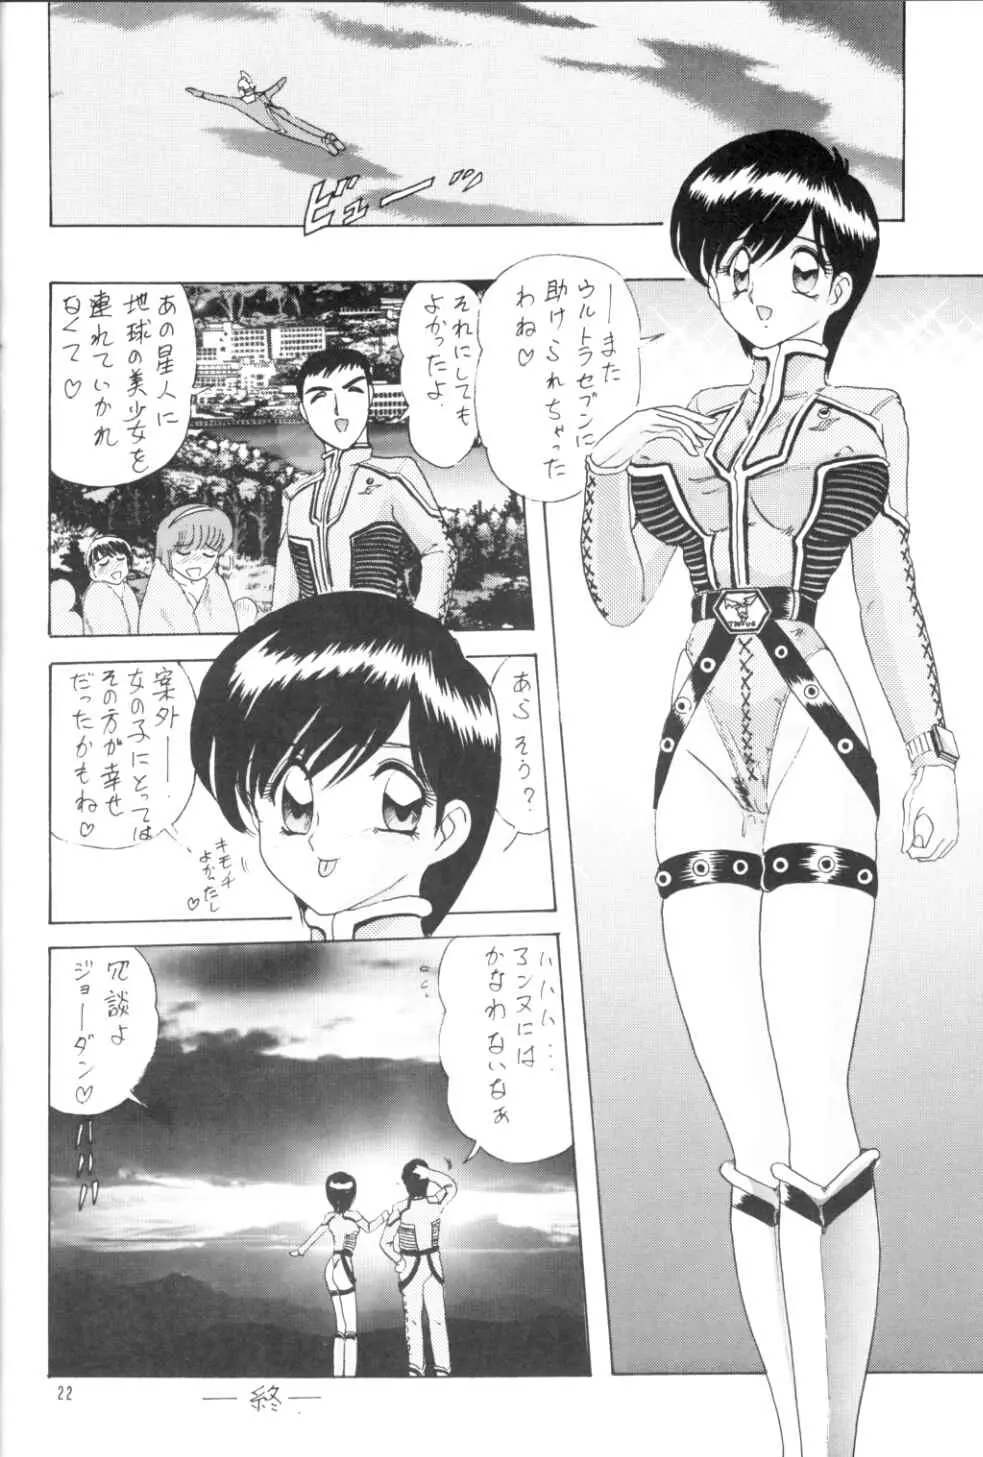 [関東うさぎ組 (上藤政樹)] U-7-X (ウルトラマン) - page23